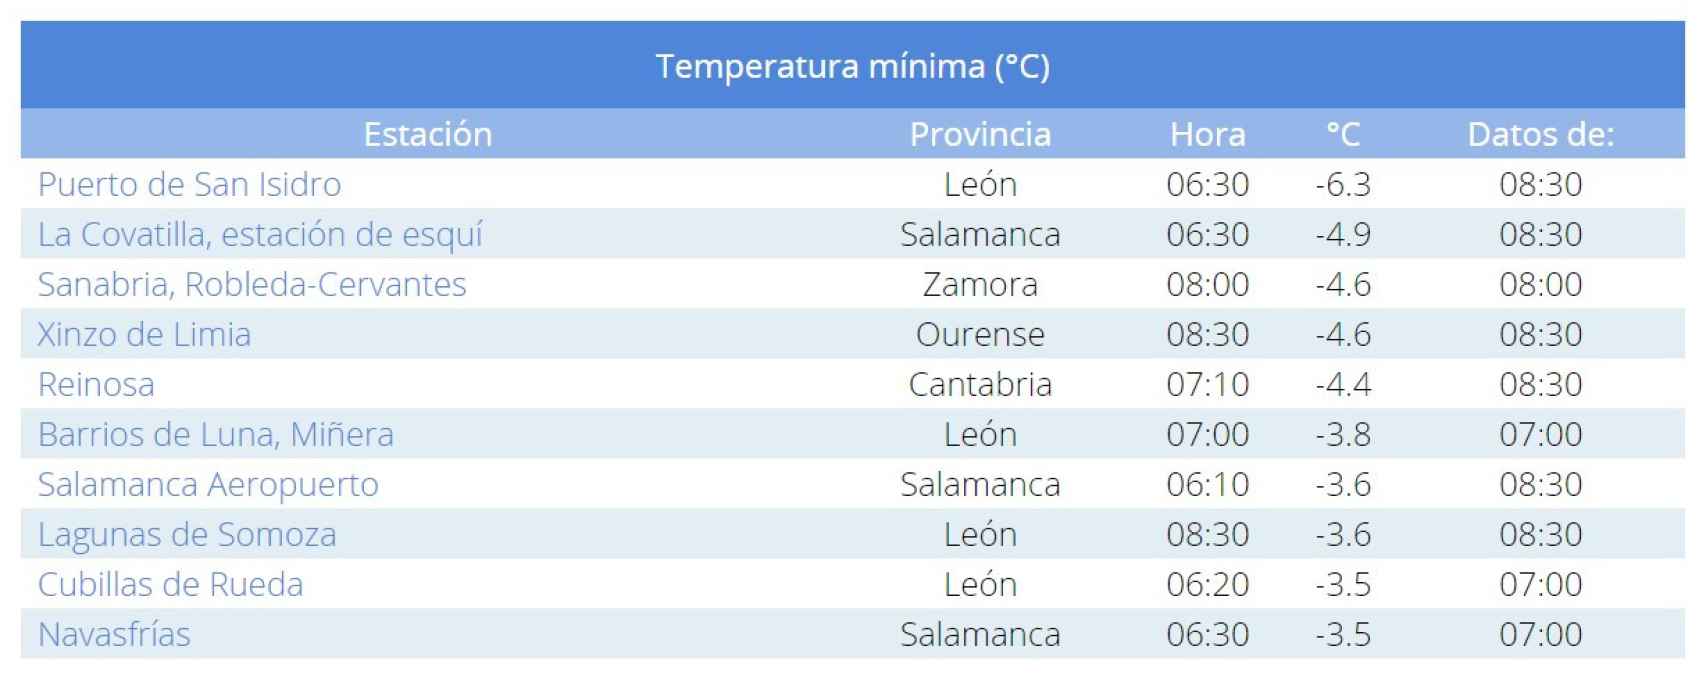 Temperaturas mínimas Castilla y León